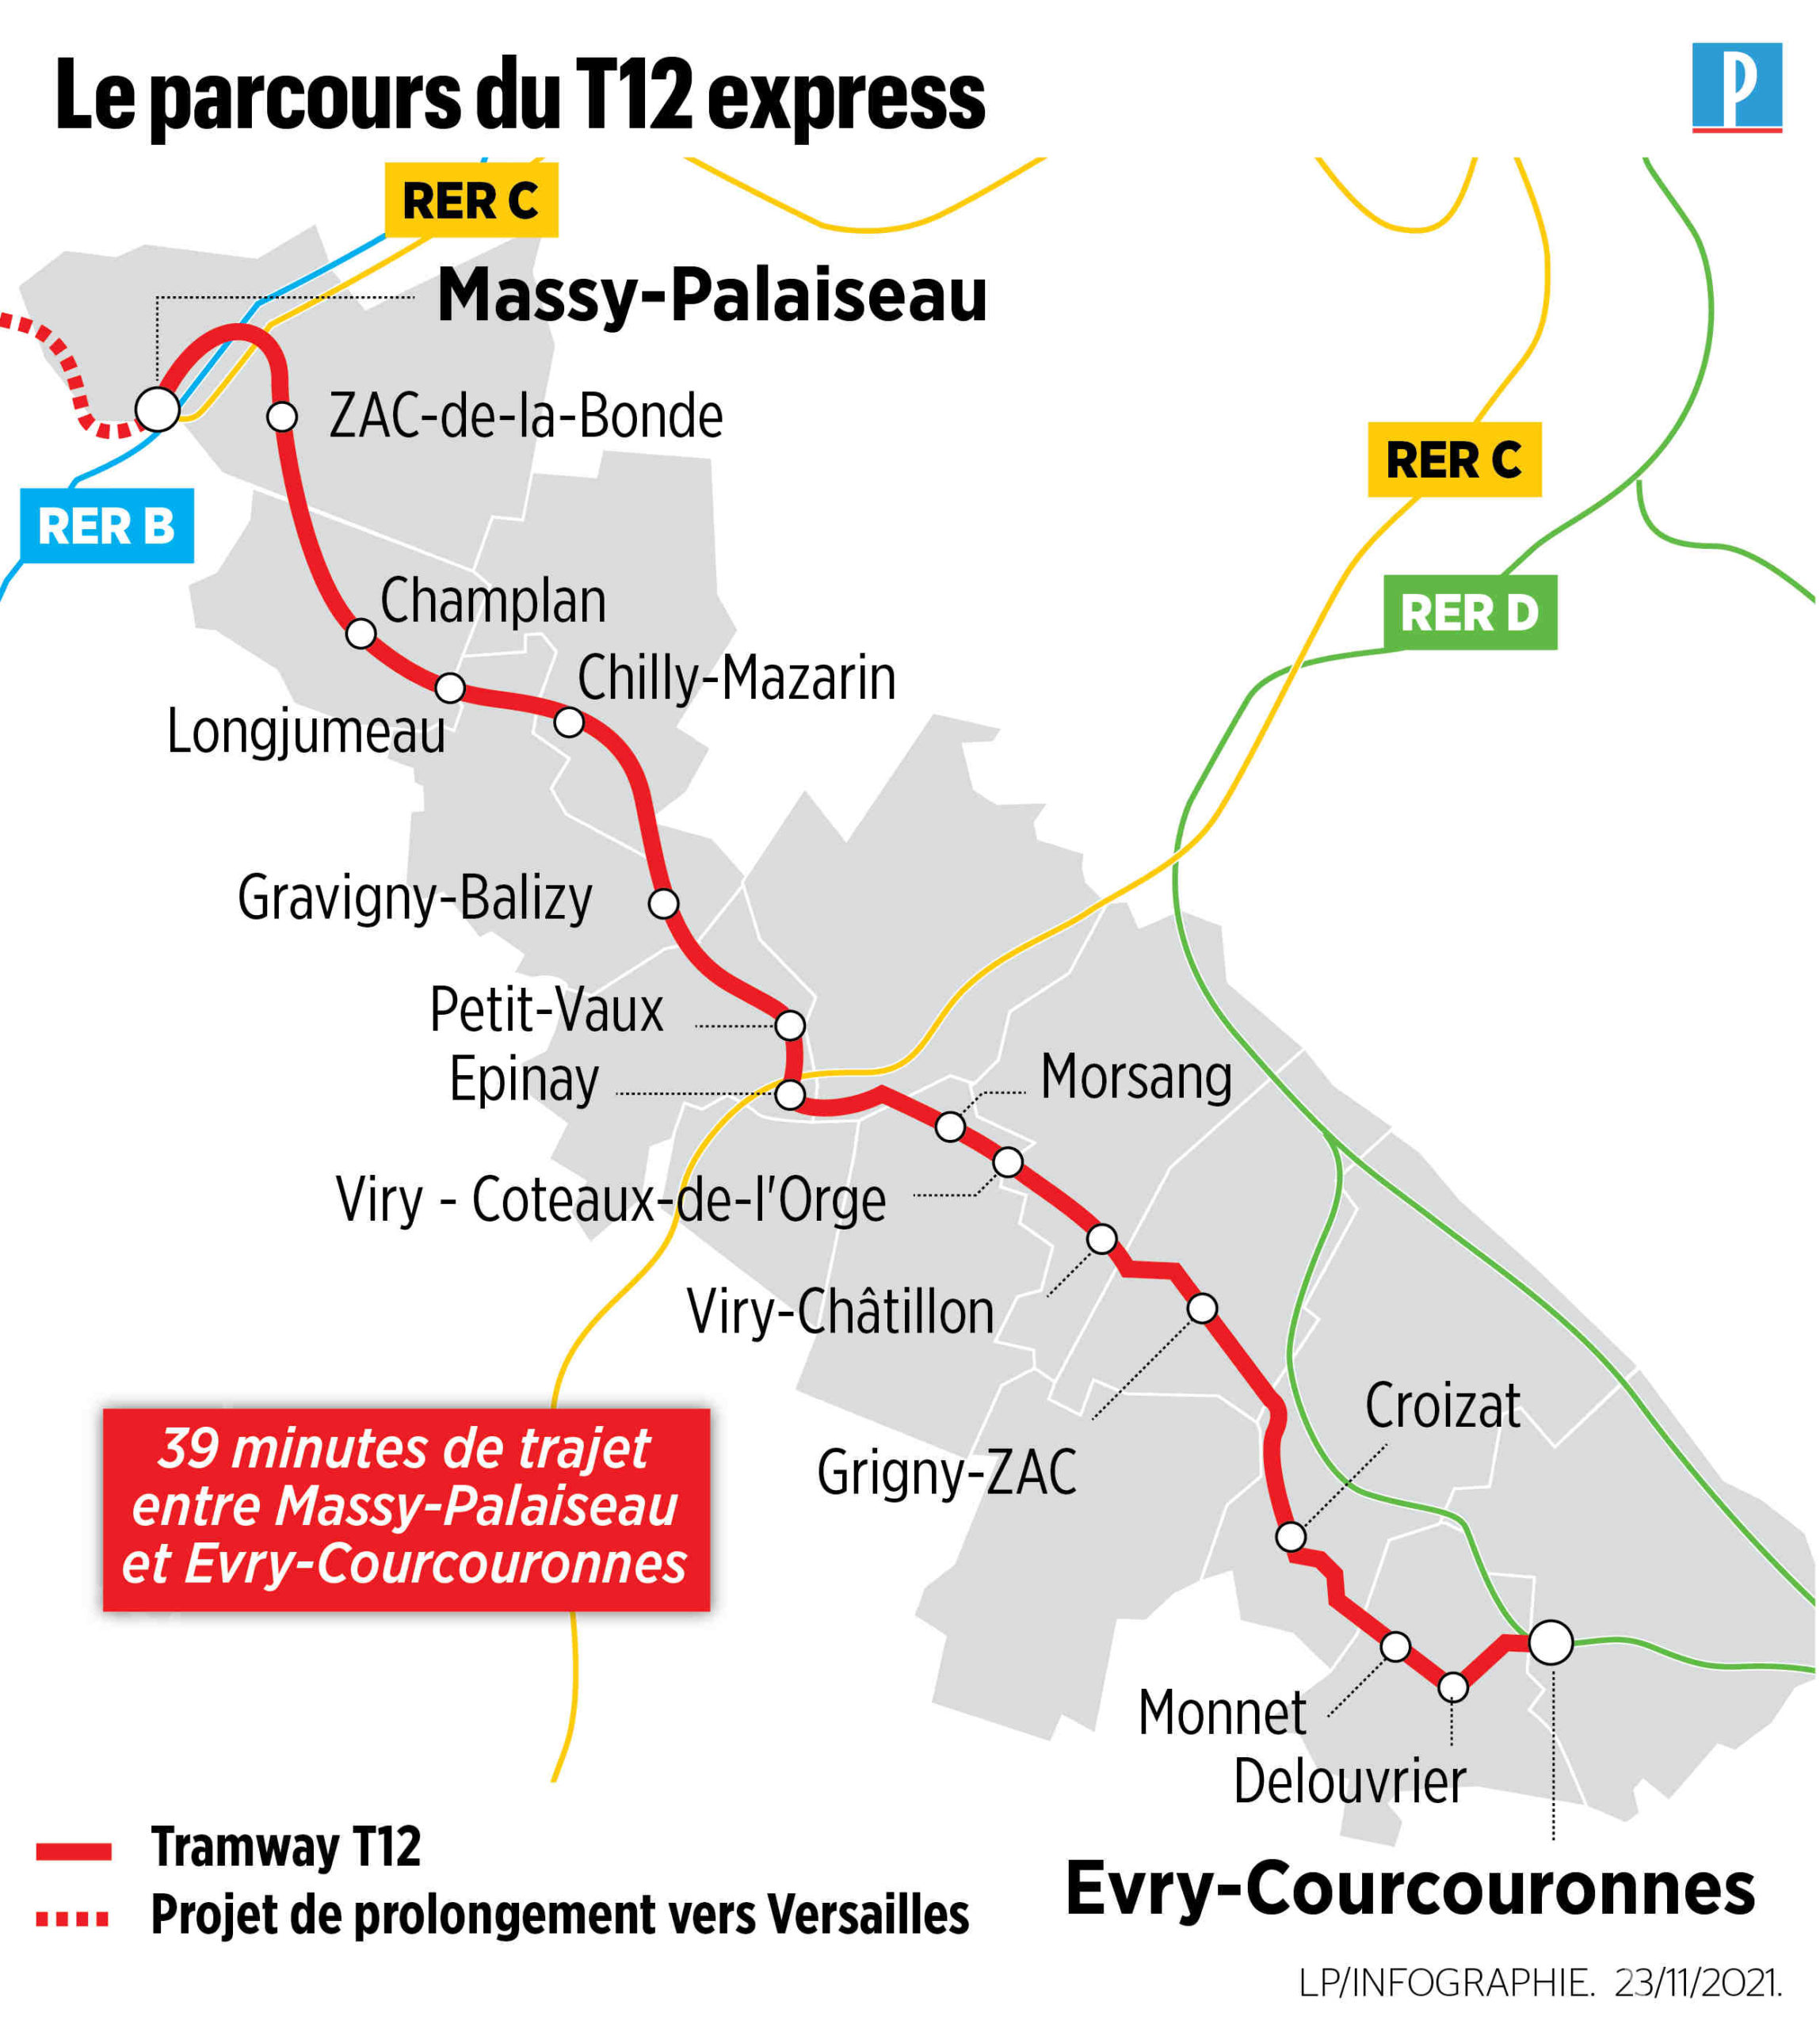 Essonne : Passage à niveau fermé pendant trois semaines pour permettre des travaux sur le tram T12